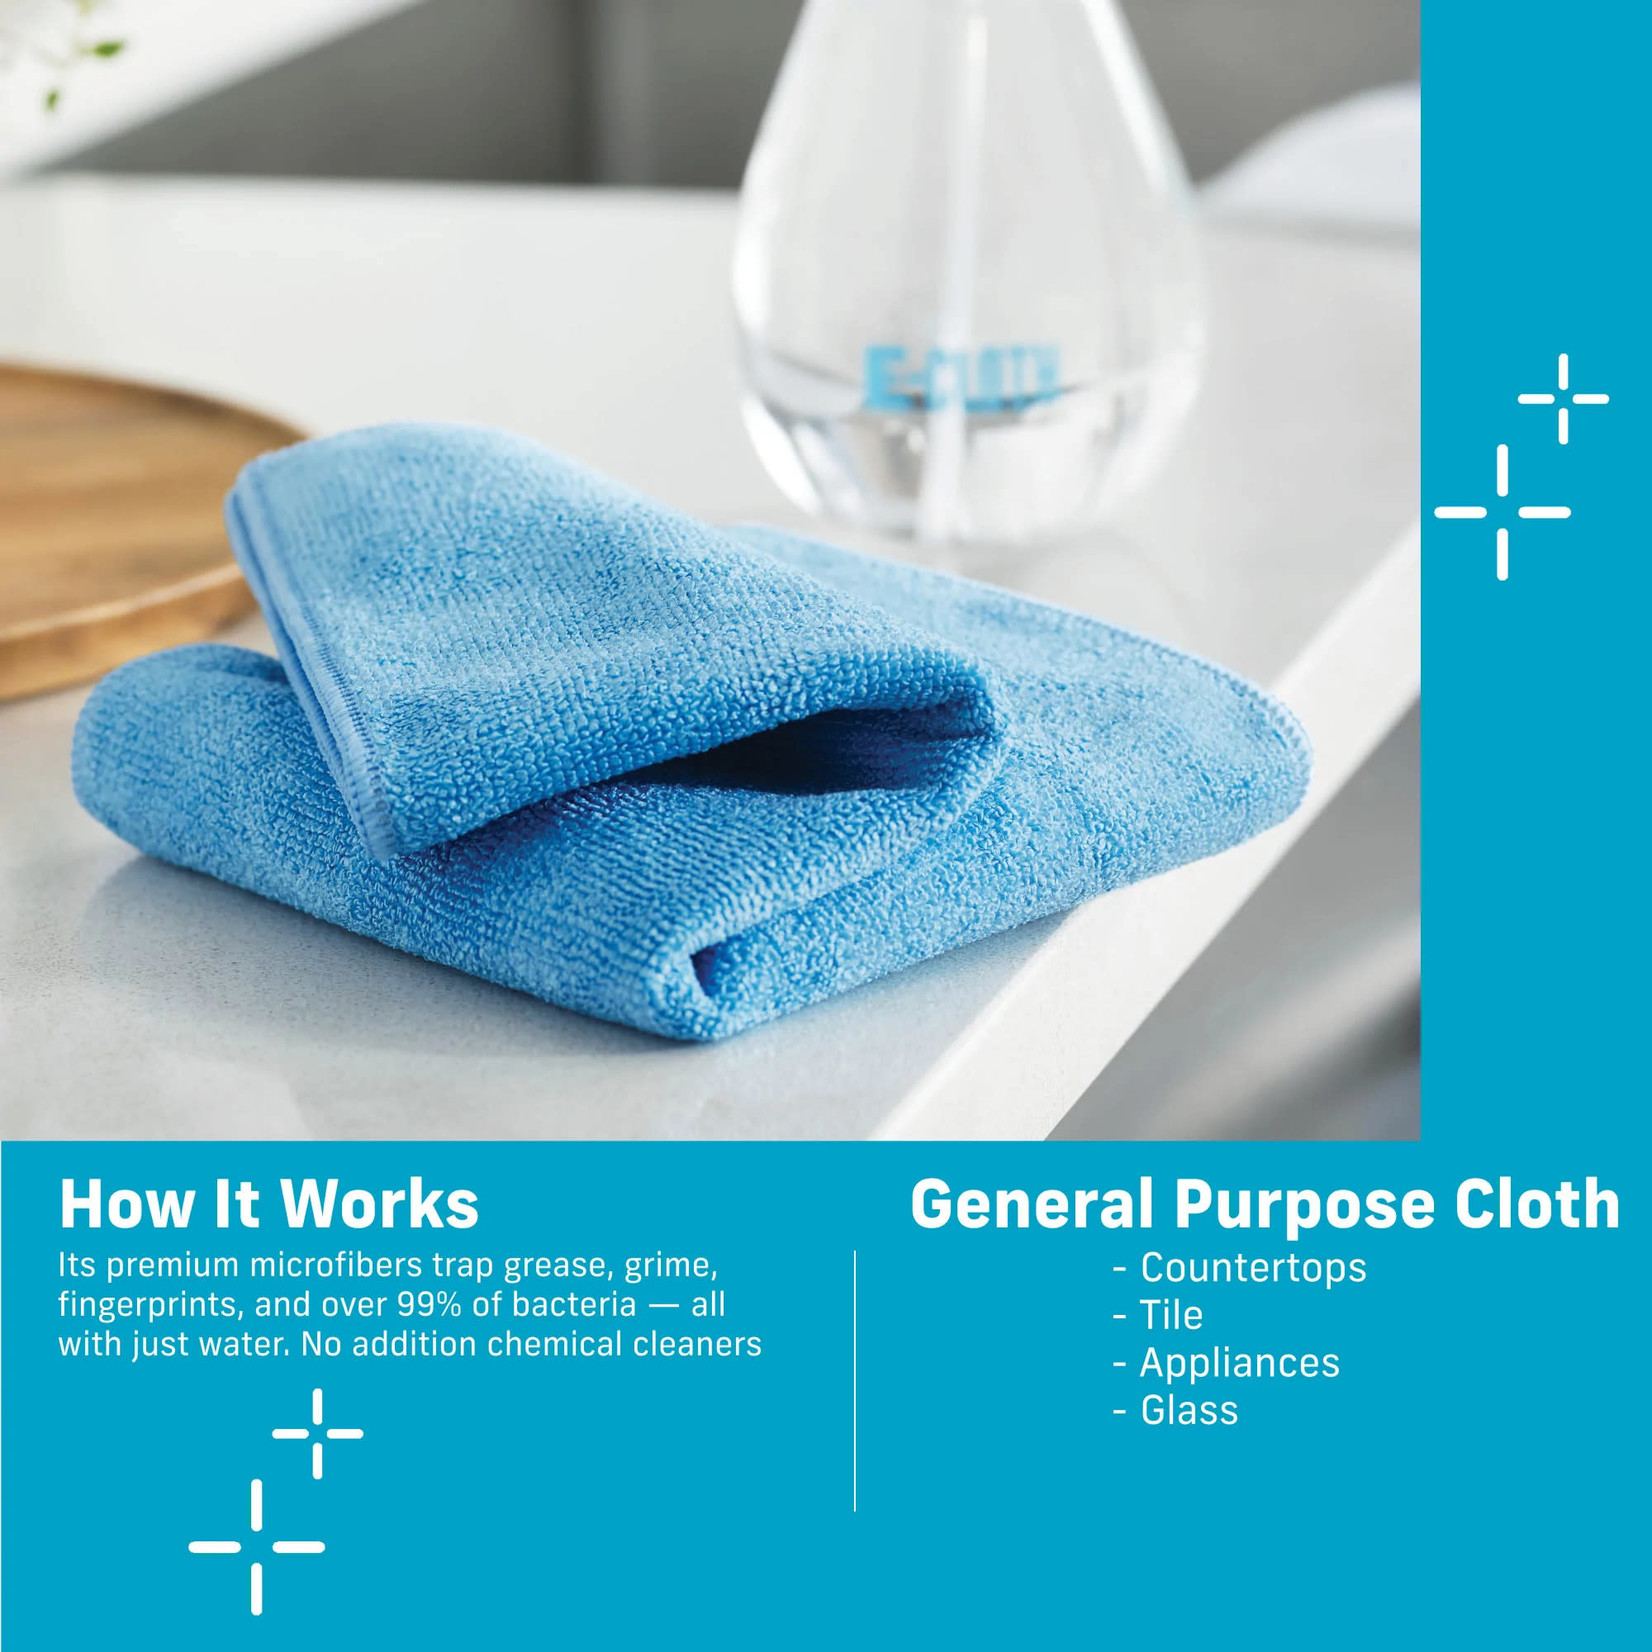 e-cloth General Purpose Cloth